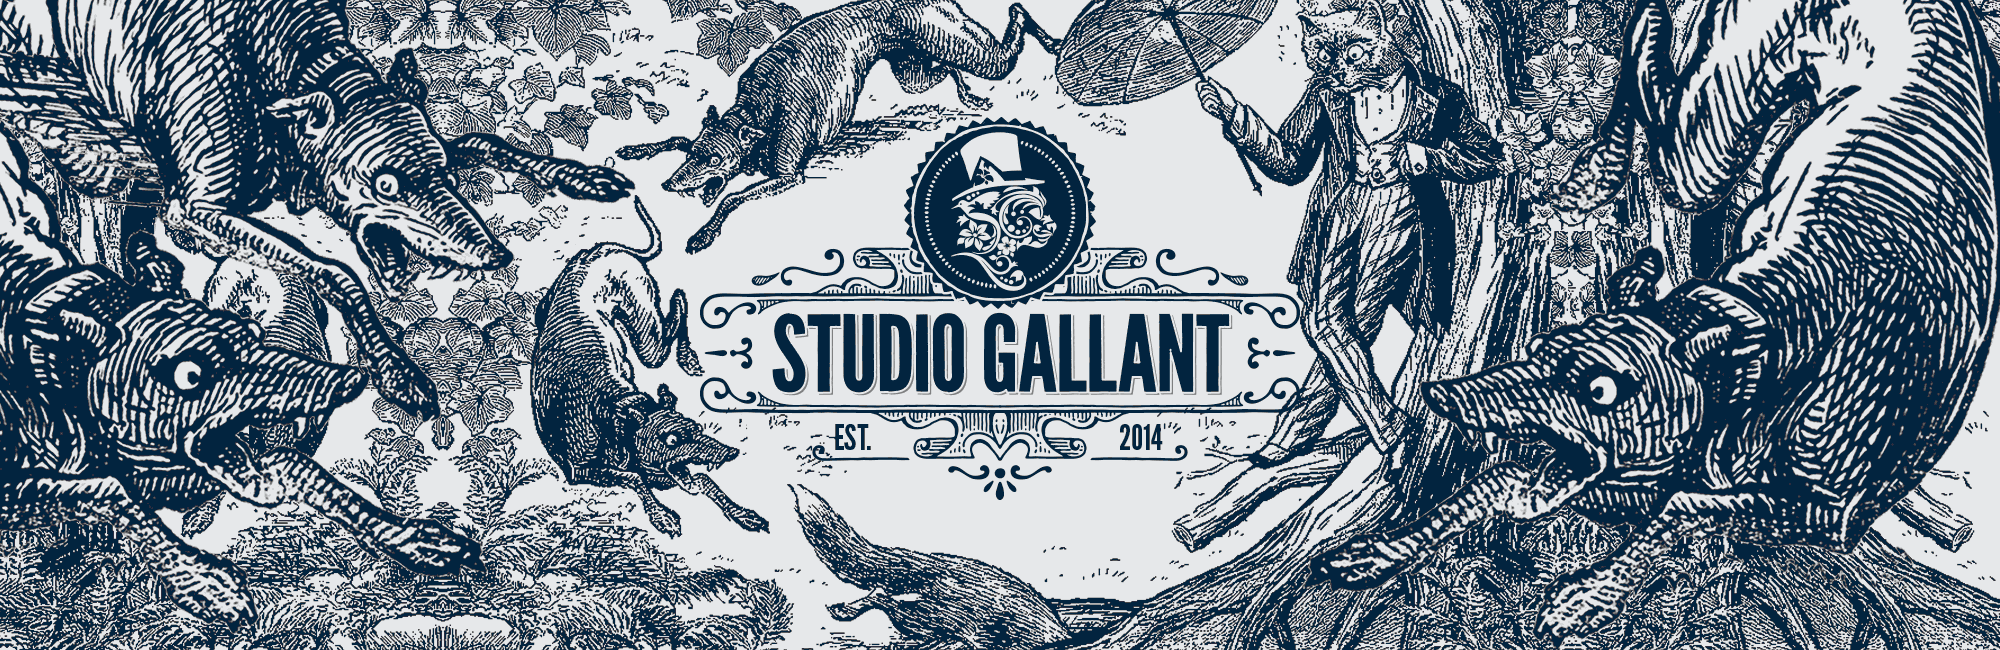 A brand new identity for Studio Gallant